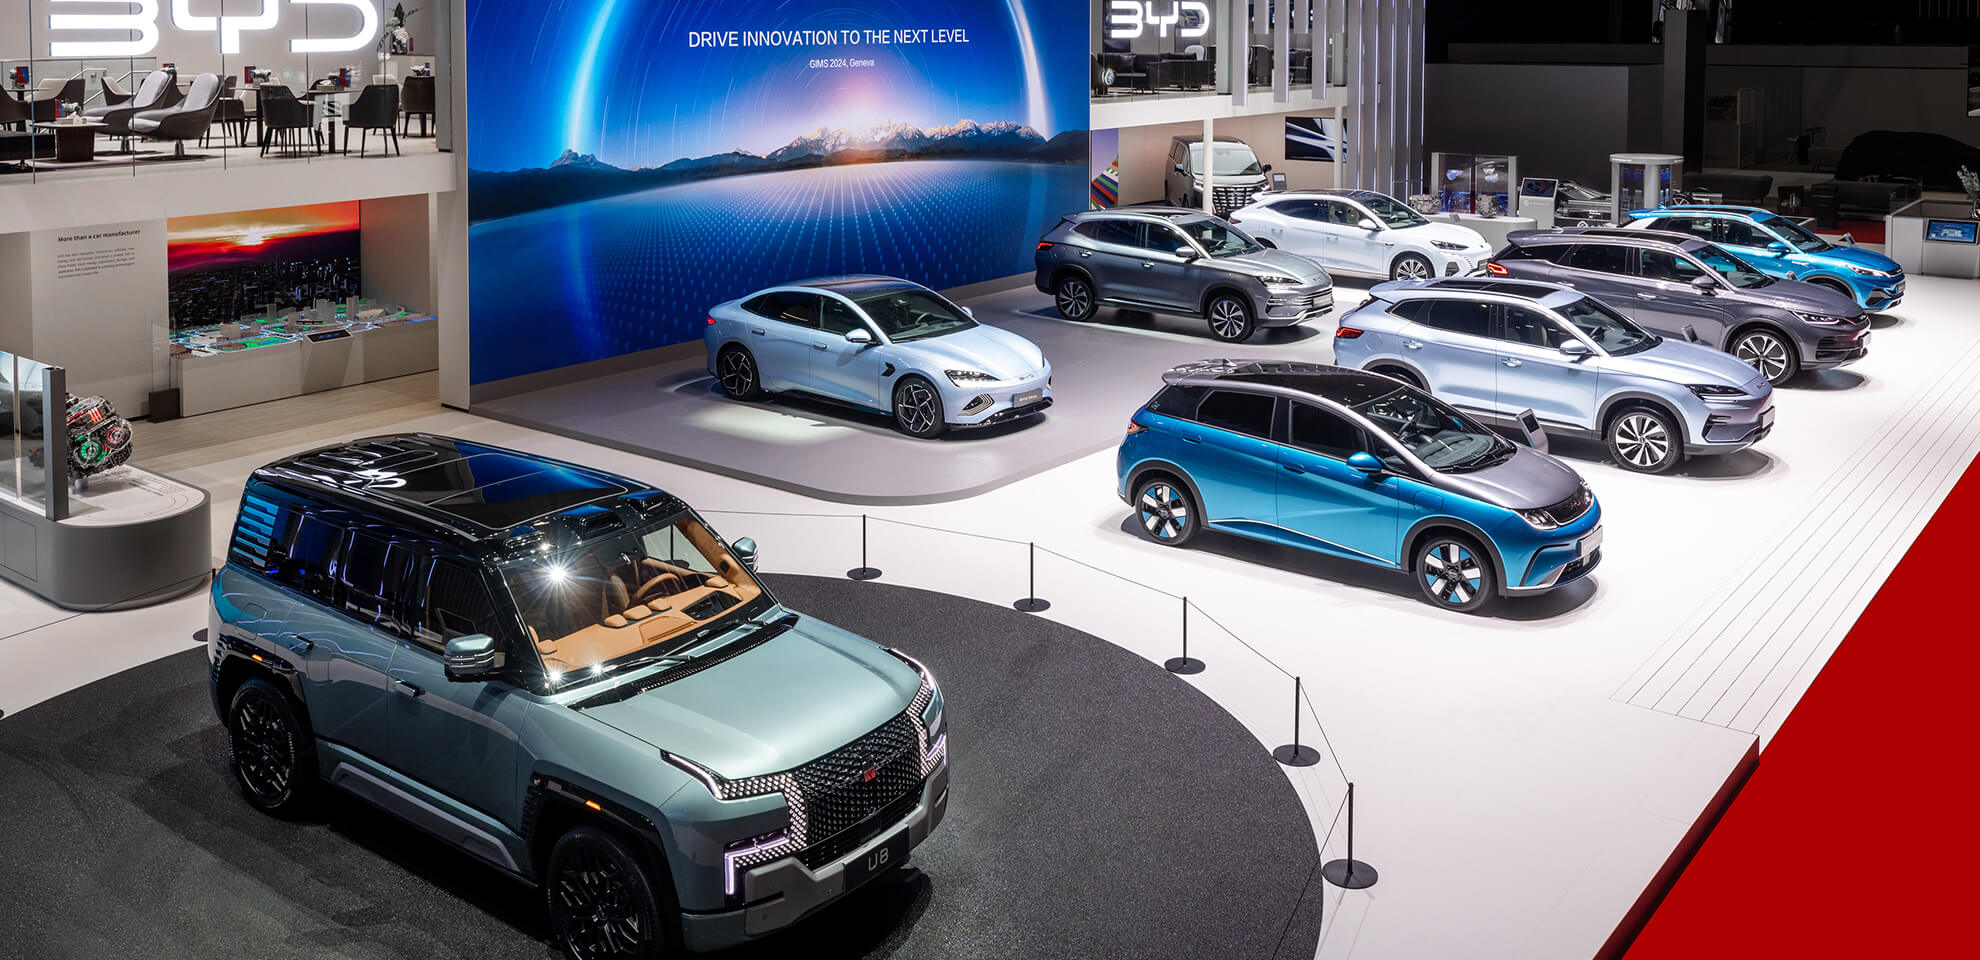 Automobilhersteller BYD begeistert mit modernem Messestand gebaut von Messebauer Display International auf dem Genfer Autosalon 2024.